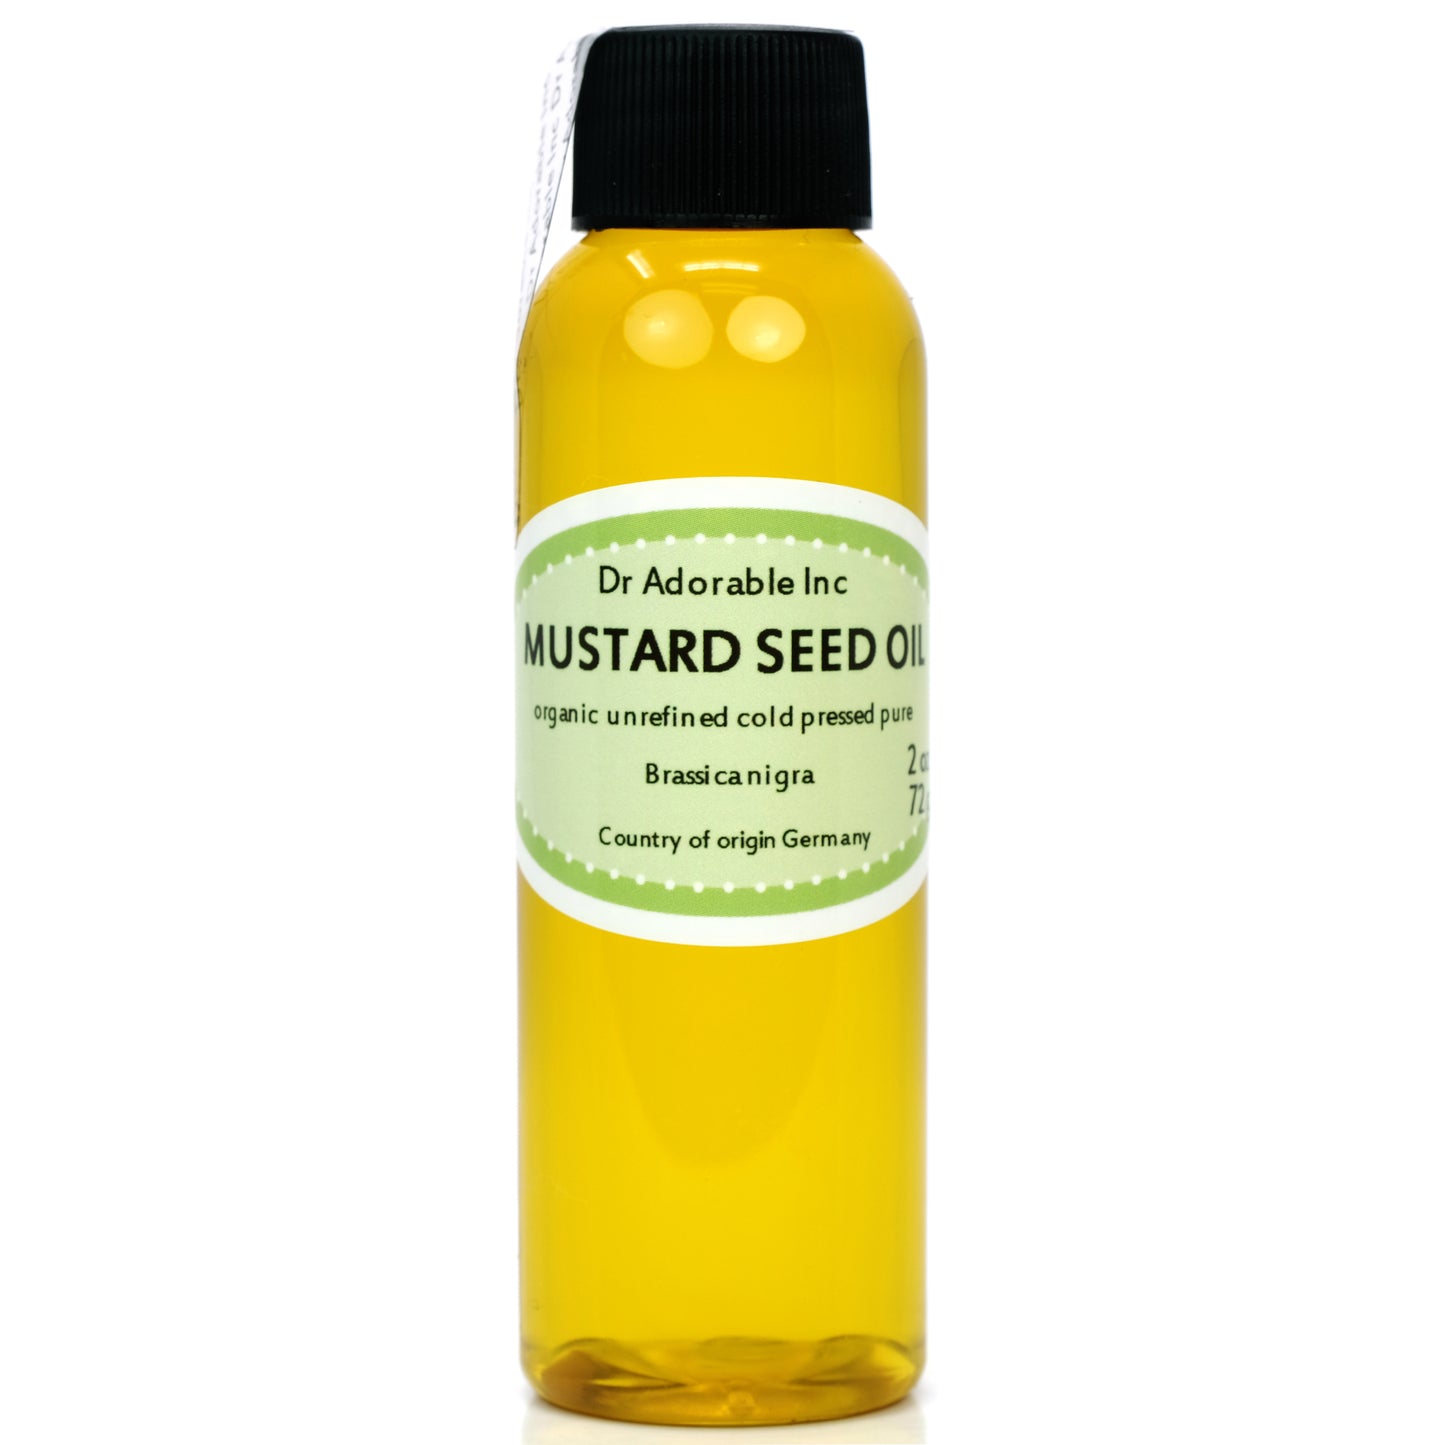 Mustard Seed Oil - Unrefined 100% Pure Natural Premium Organic Cold Pressed